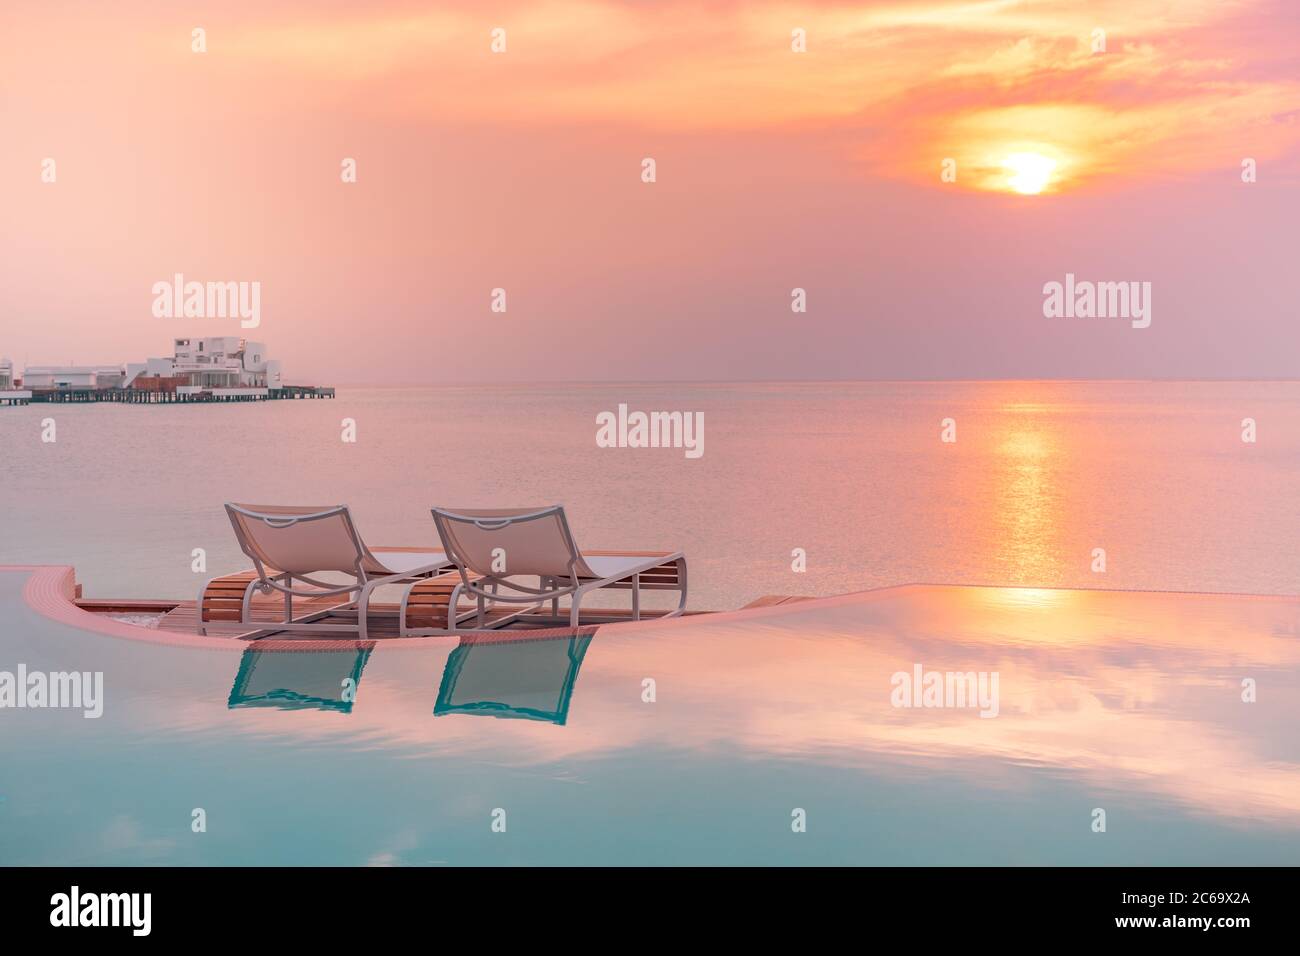 Table à manger au coucher du soleil. Dîner romantique sur la plage, magnifique coucher de soleil sur la mer. Ambiance romantique, vacances de voyage en couple Banque D'Images